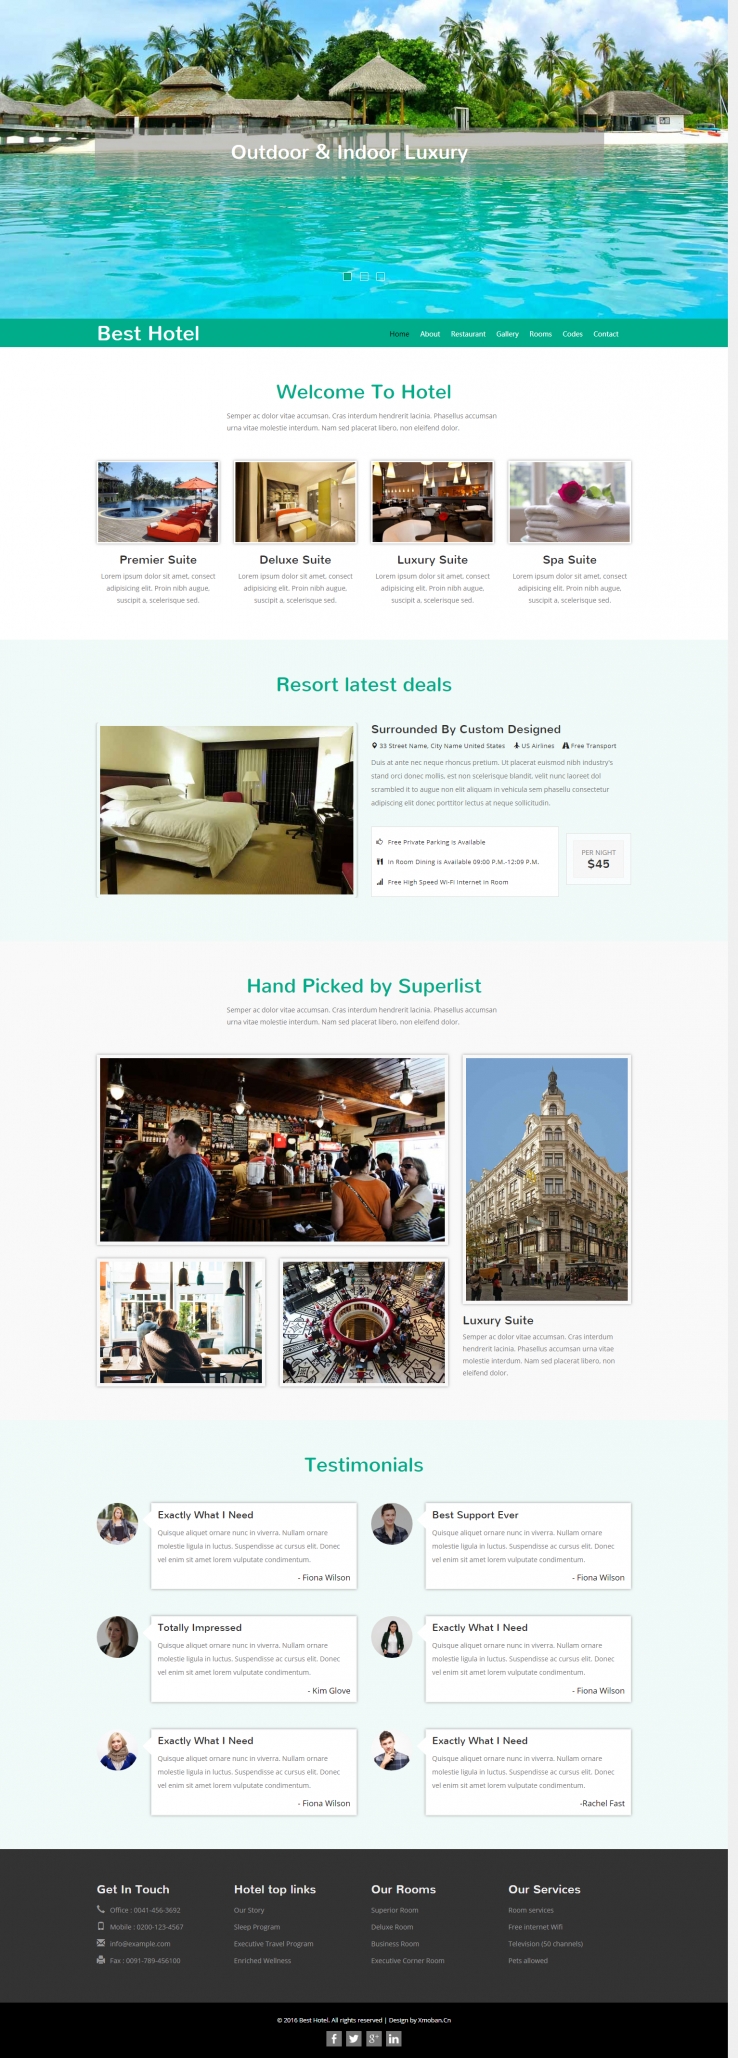 白色简洁风格的酒店展示及预订企业网站源码下载